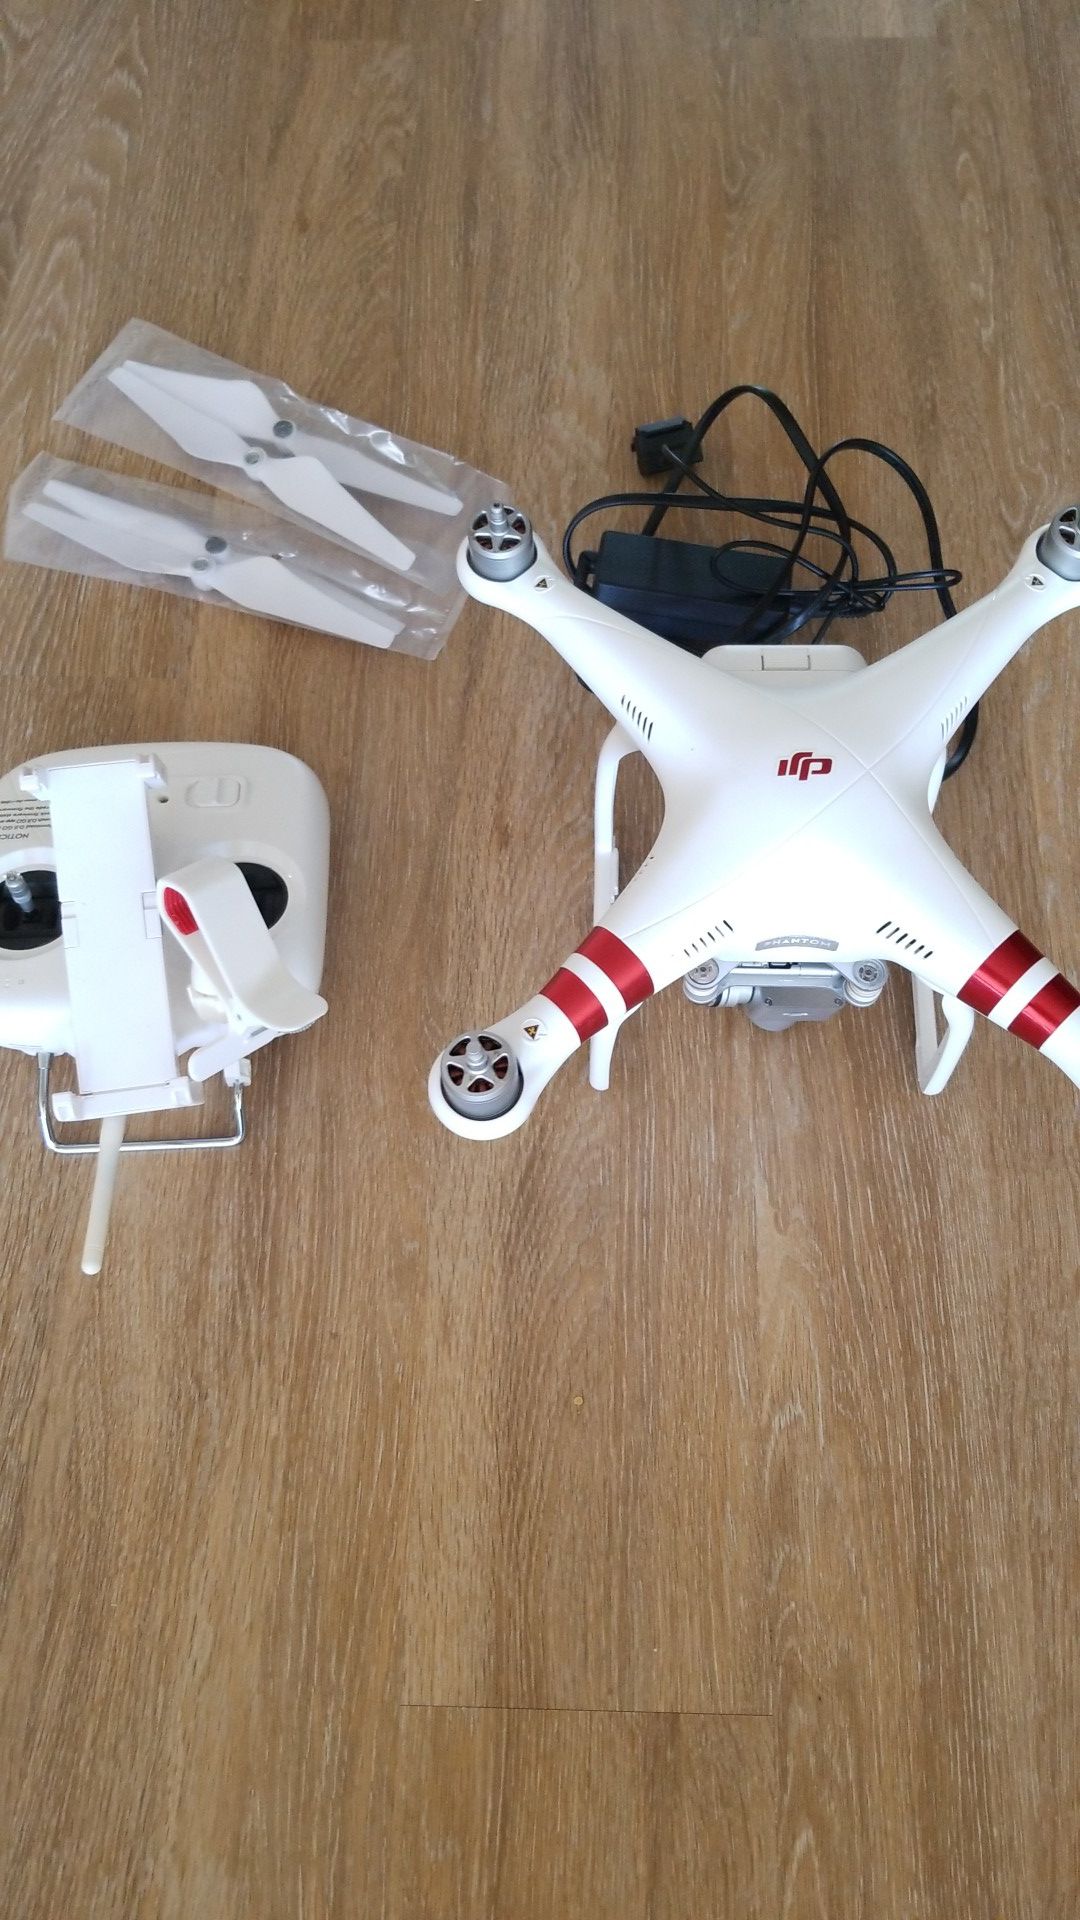 DJI Phantom 3 Standard camera drone